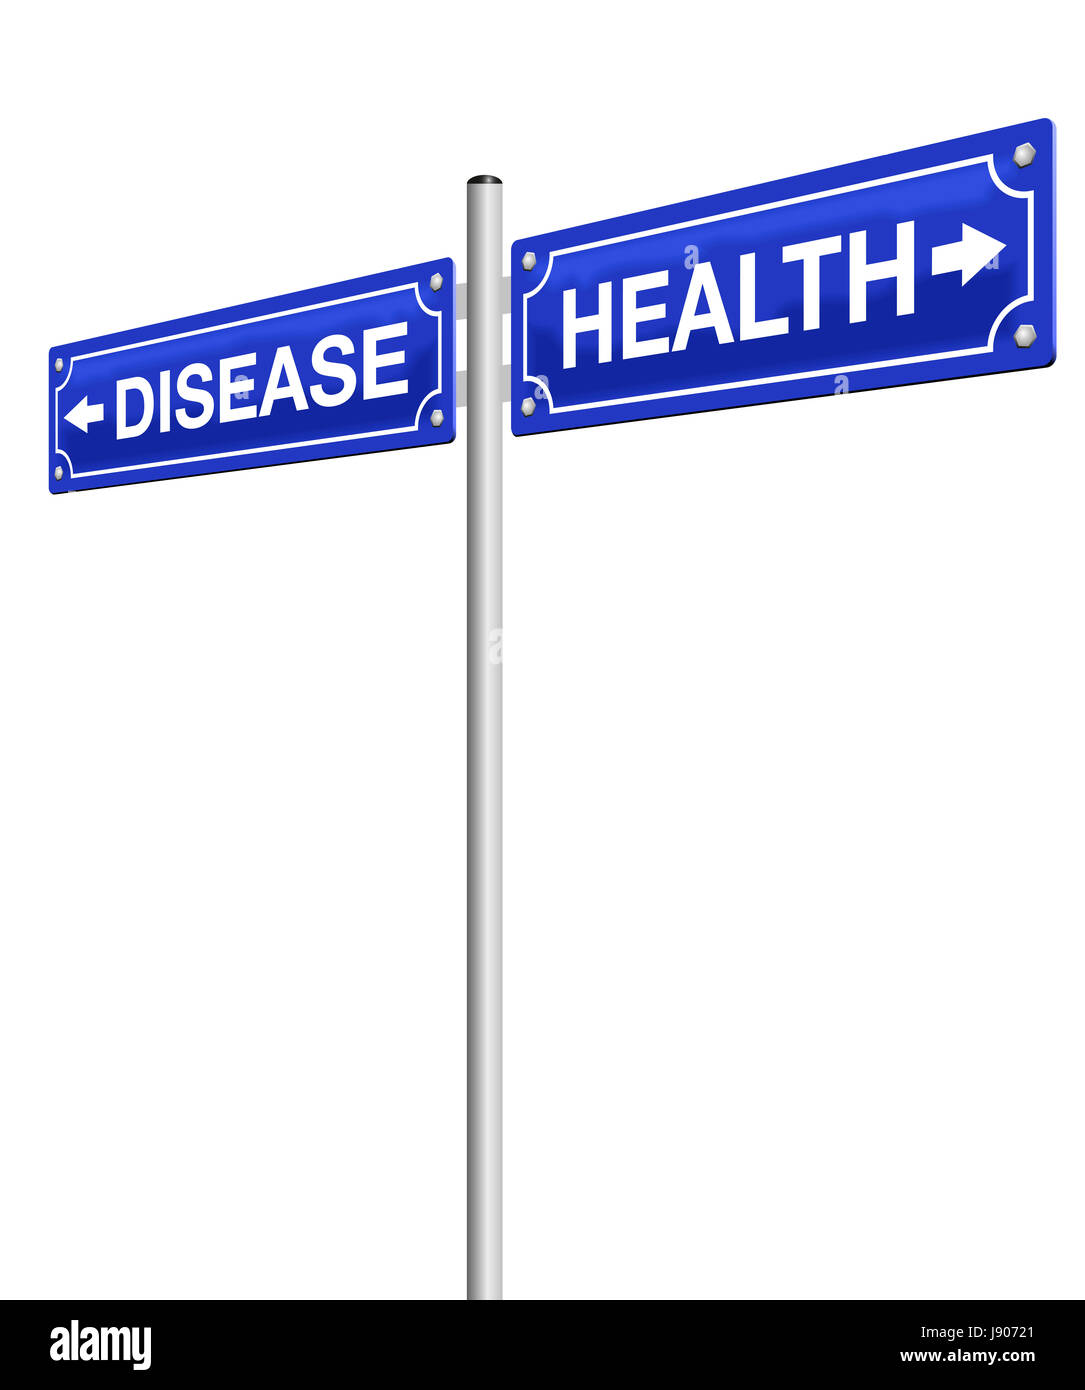 Gesundheit und Krankheit, geschrieben am Wegweiser in entgegengesetzte Richtungen.  Abbildung auf weißem Hintergrund. Stockfoto